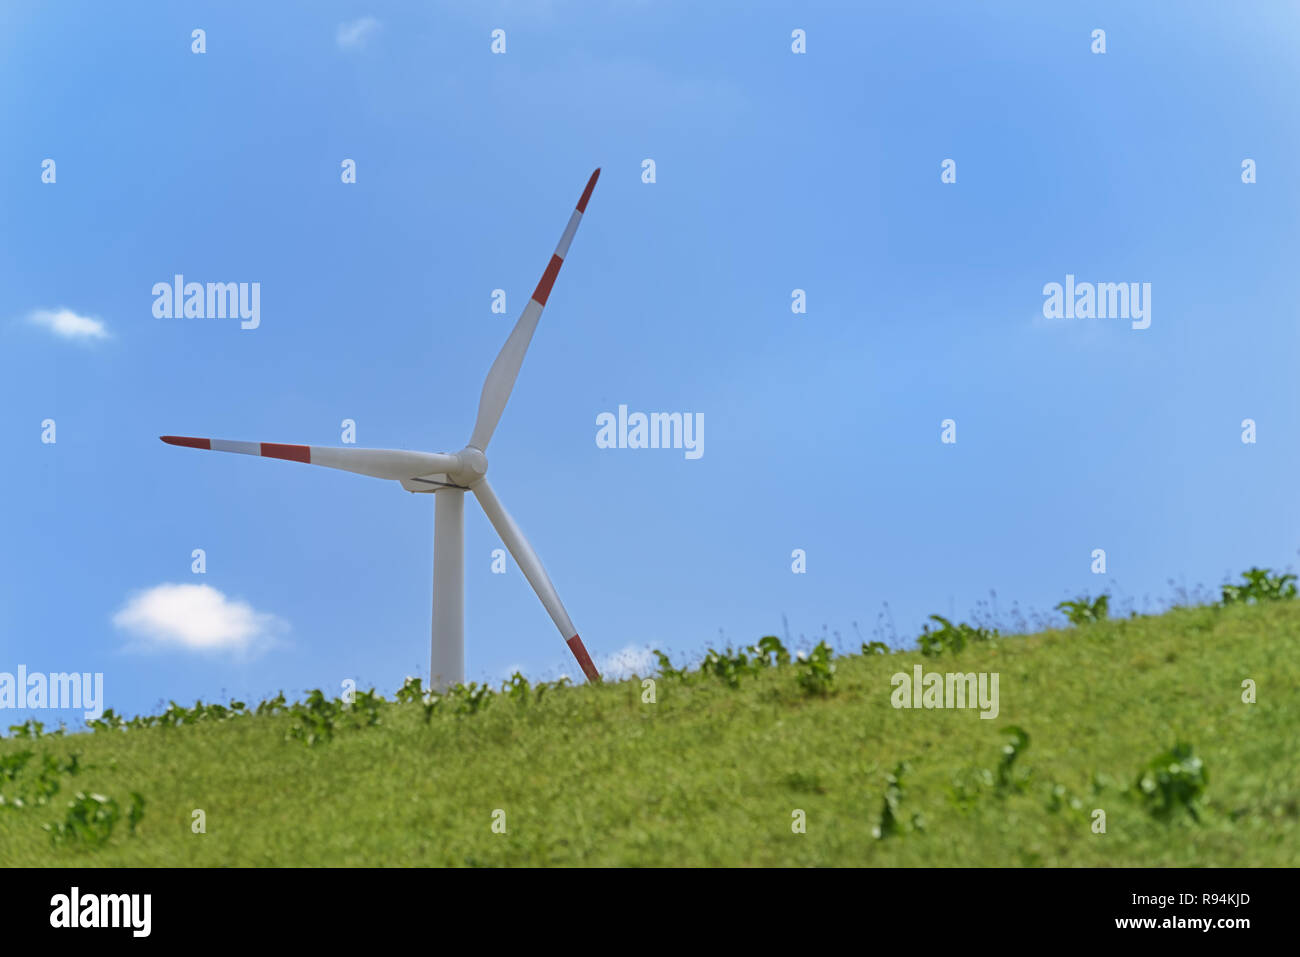 Wind Turbine gegen blauen Himmel auf die Energie Hill Georgswerder in Hamburg, Deutschland. 'Energie' ist eine öffentliche Information Center über Erneuerbare Stockfoto